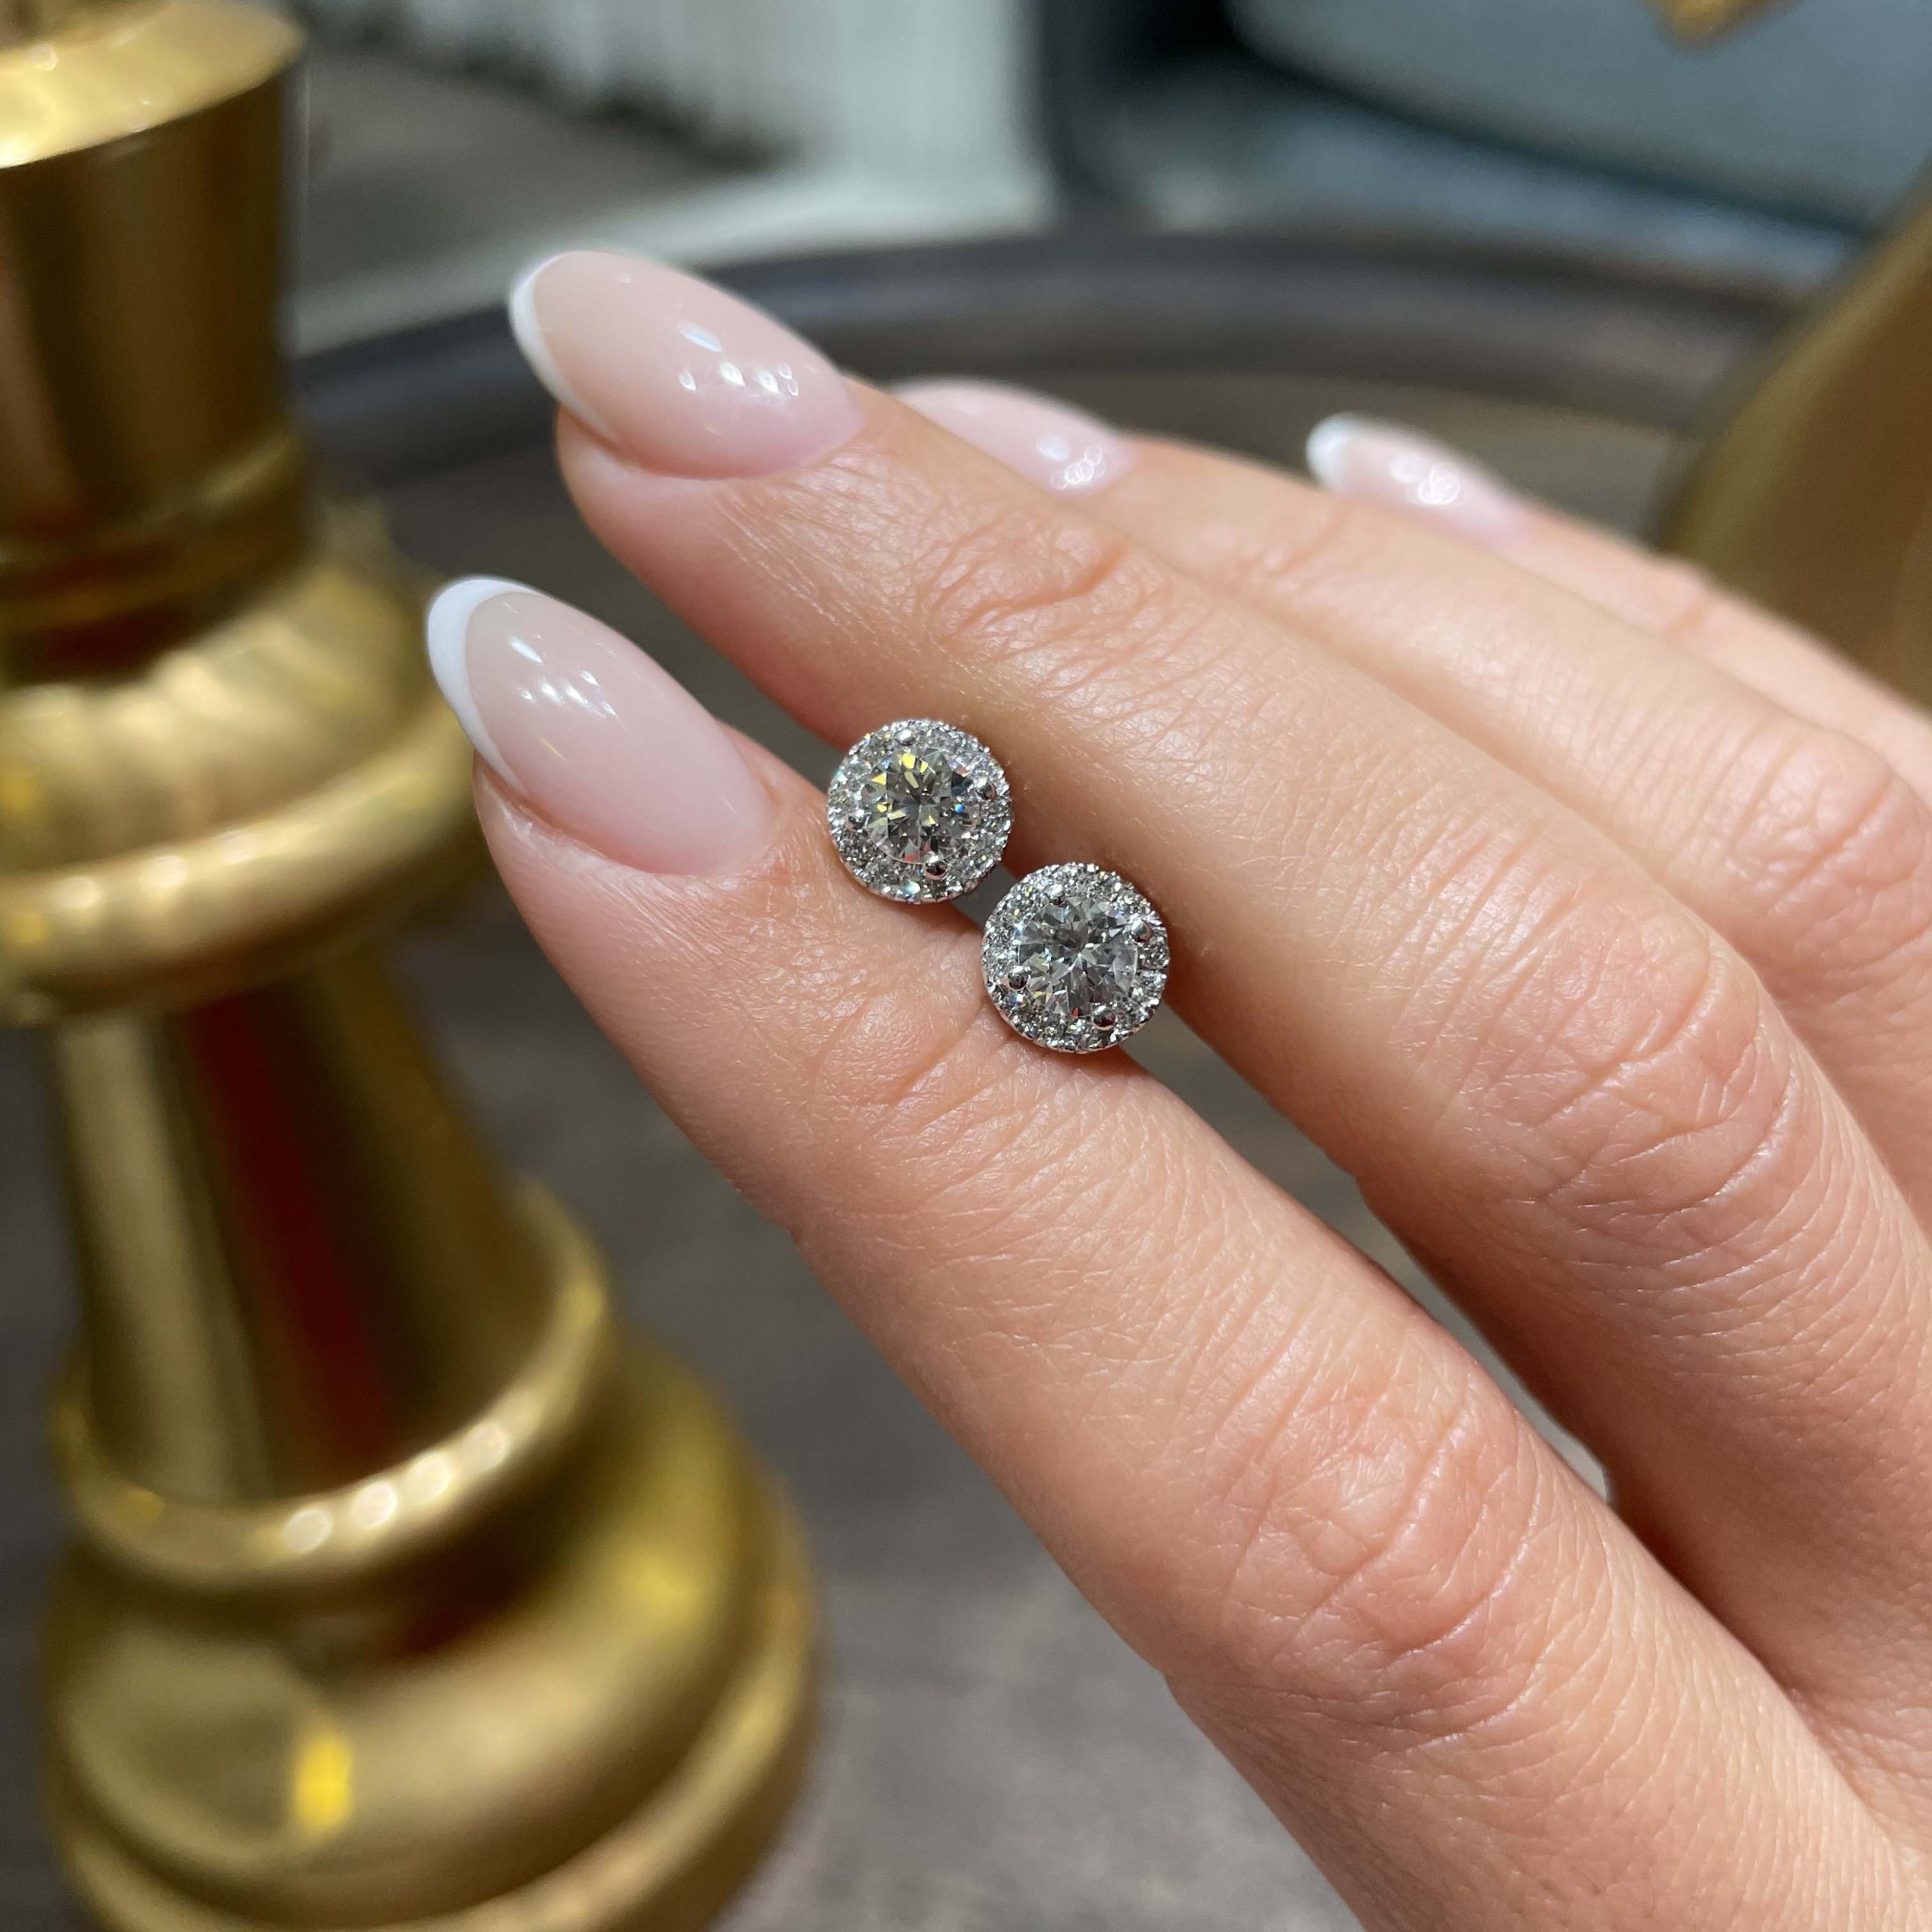 Erica Lab Grown Diamond Earrings -14K White Gold